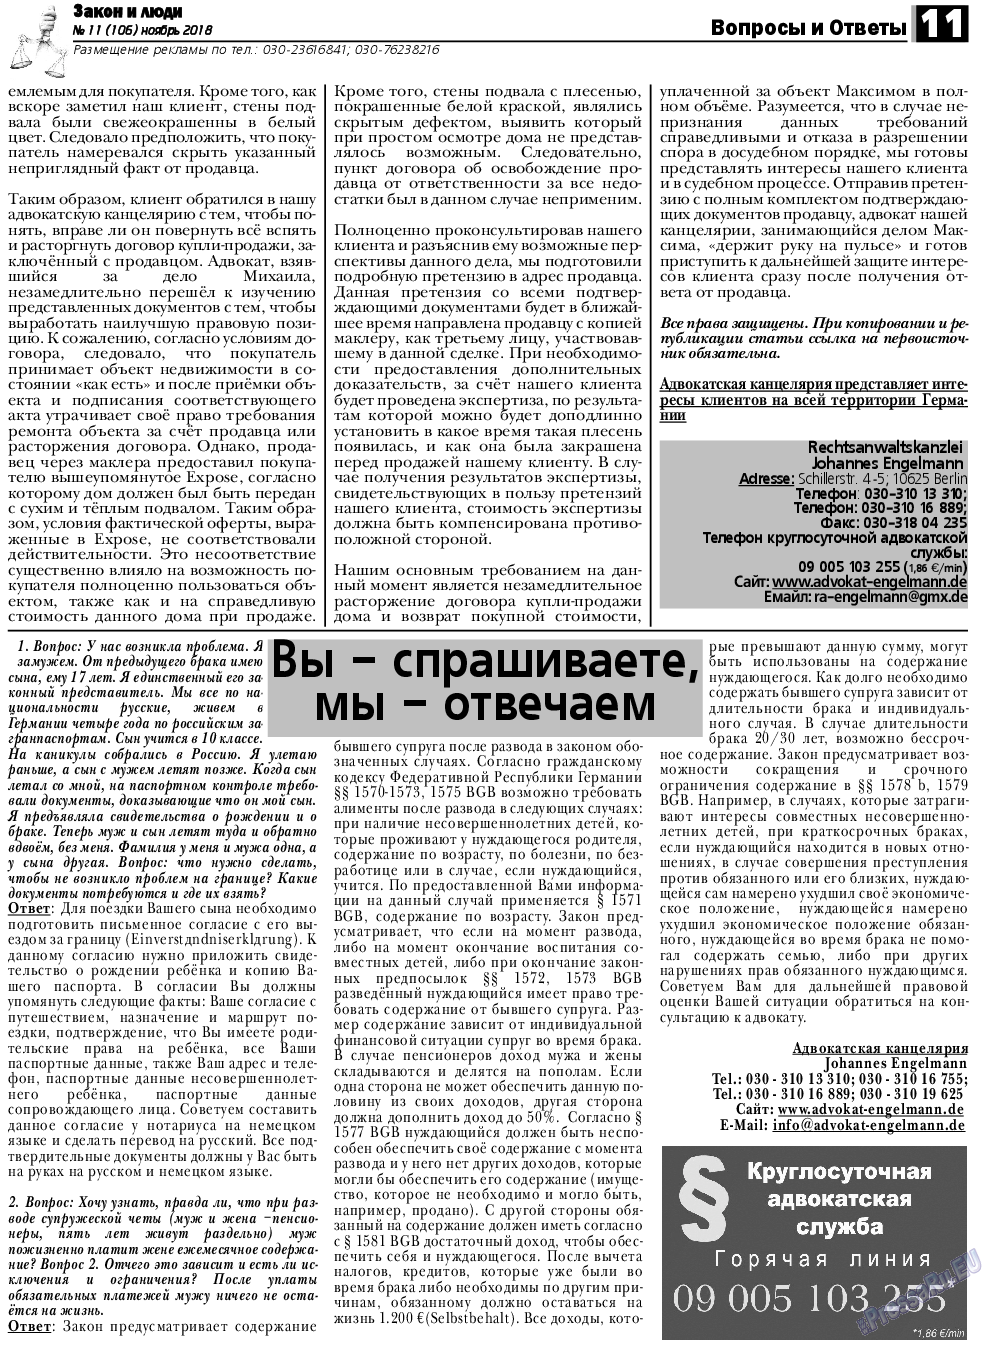 Закон и люди, газета. 2018 №11 стр.11